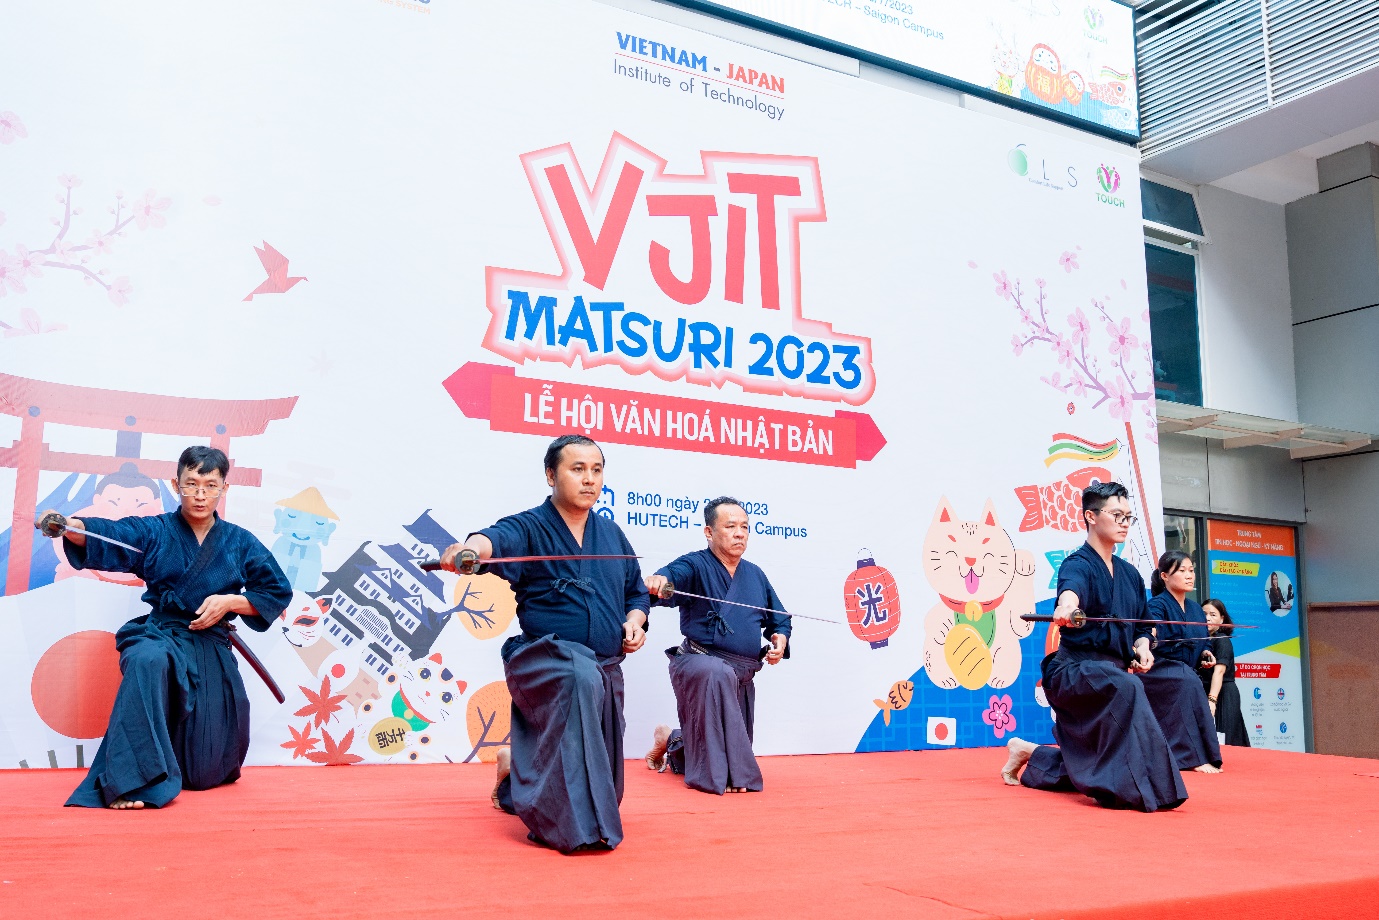 Đặc sắc không gian văn hóa Nhật Bản “VJIT MATSURI 2023” tại HUTECH - Ảnh 3.